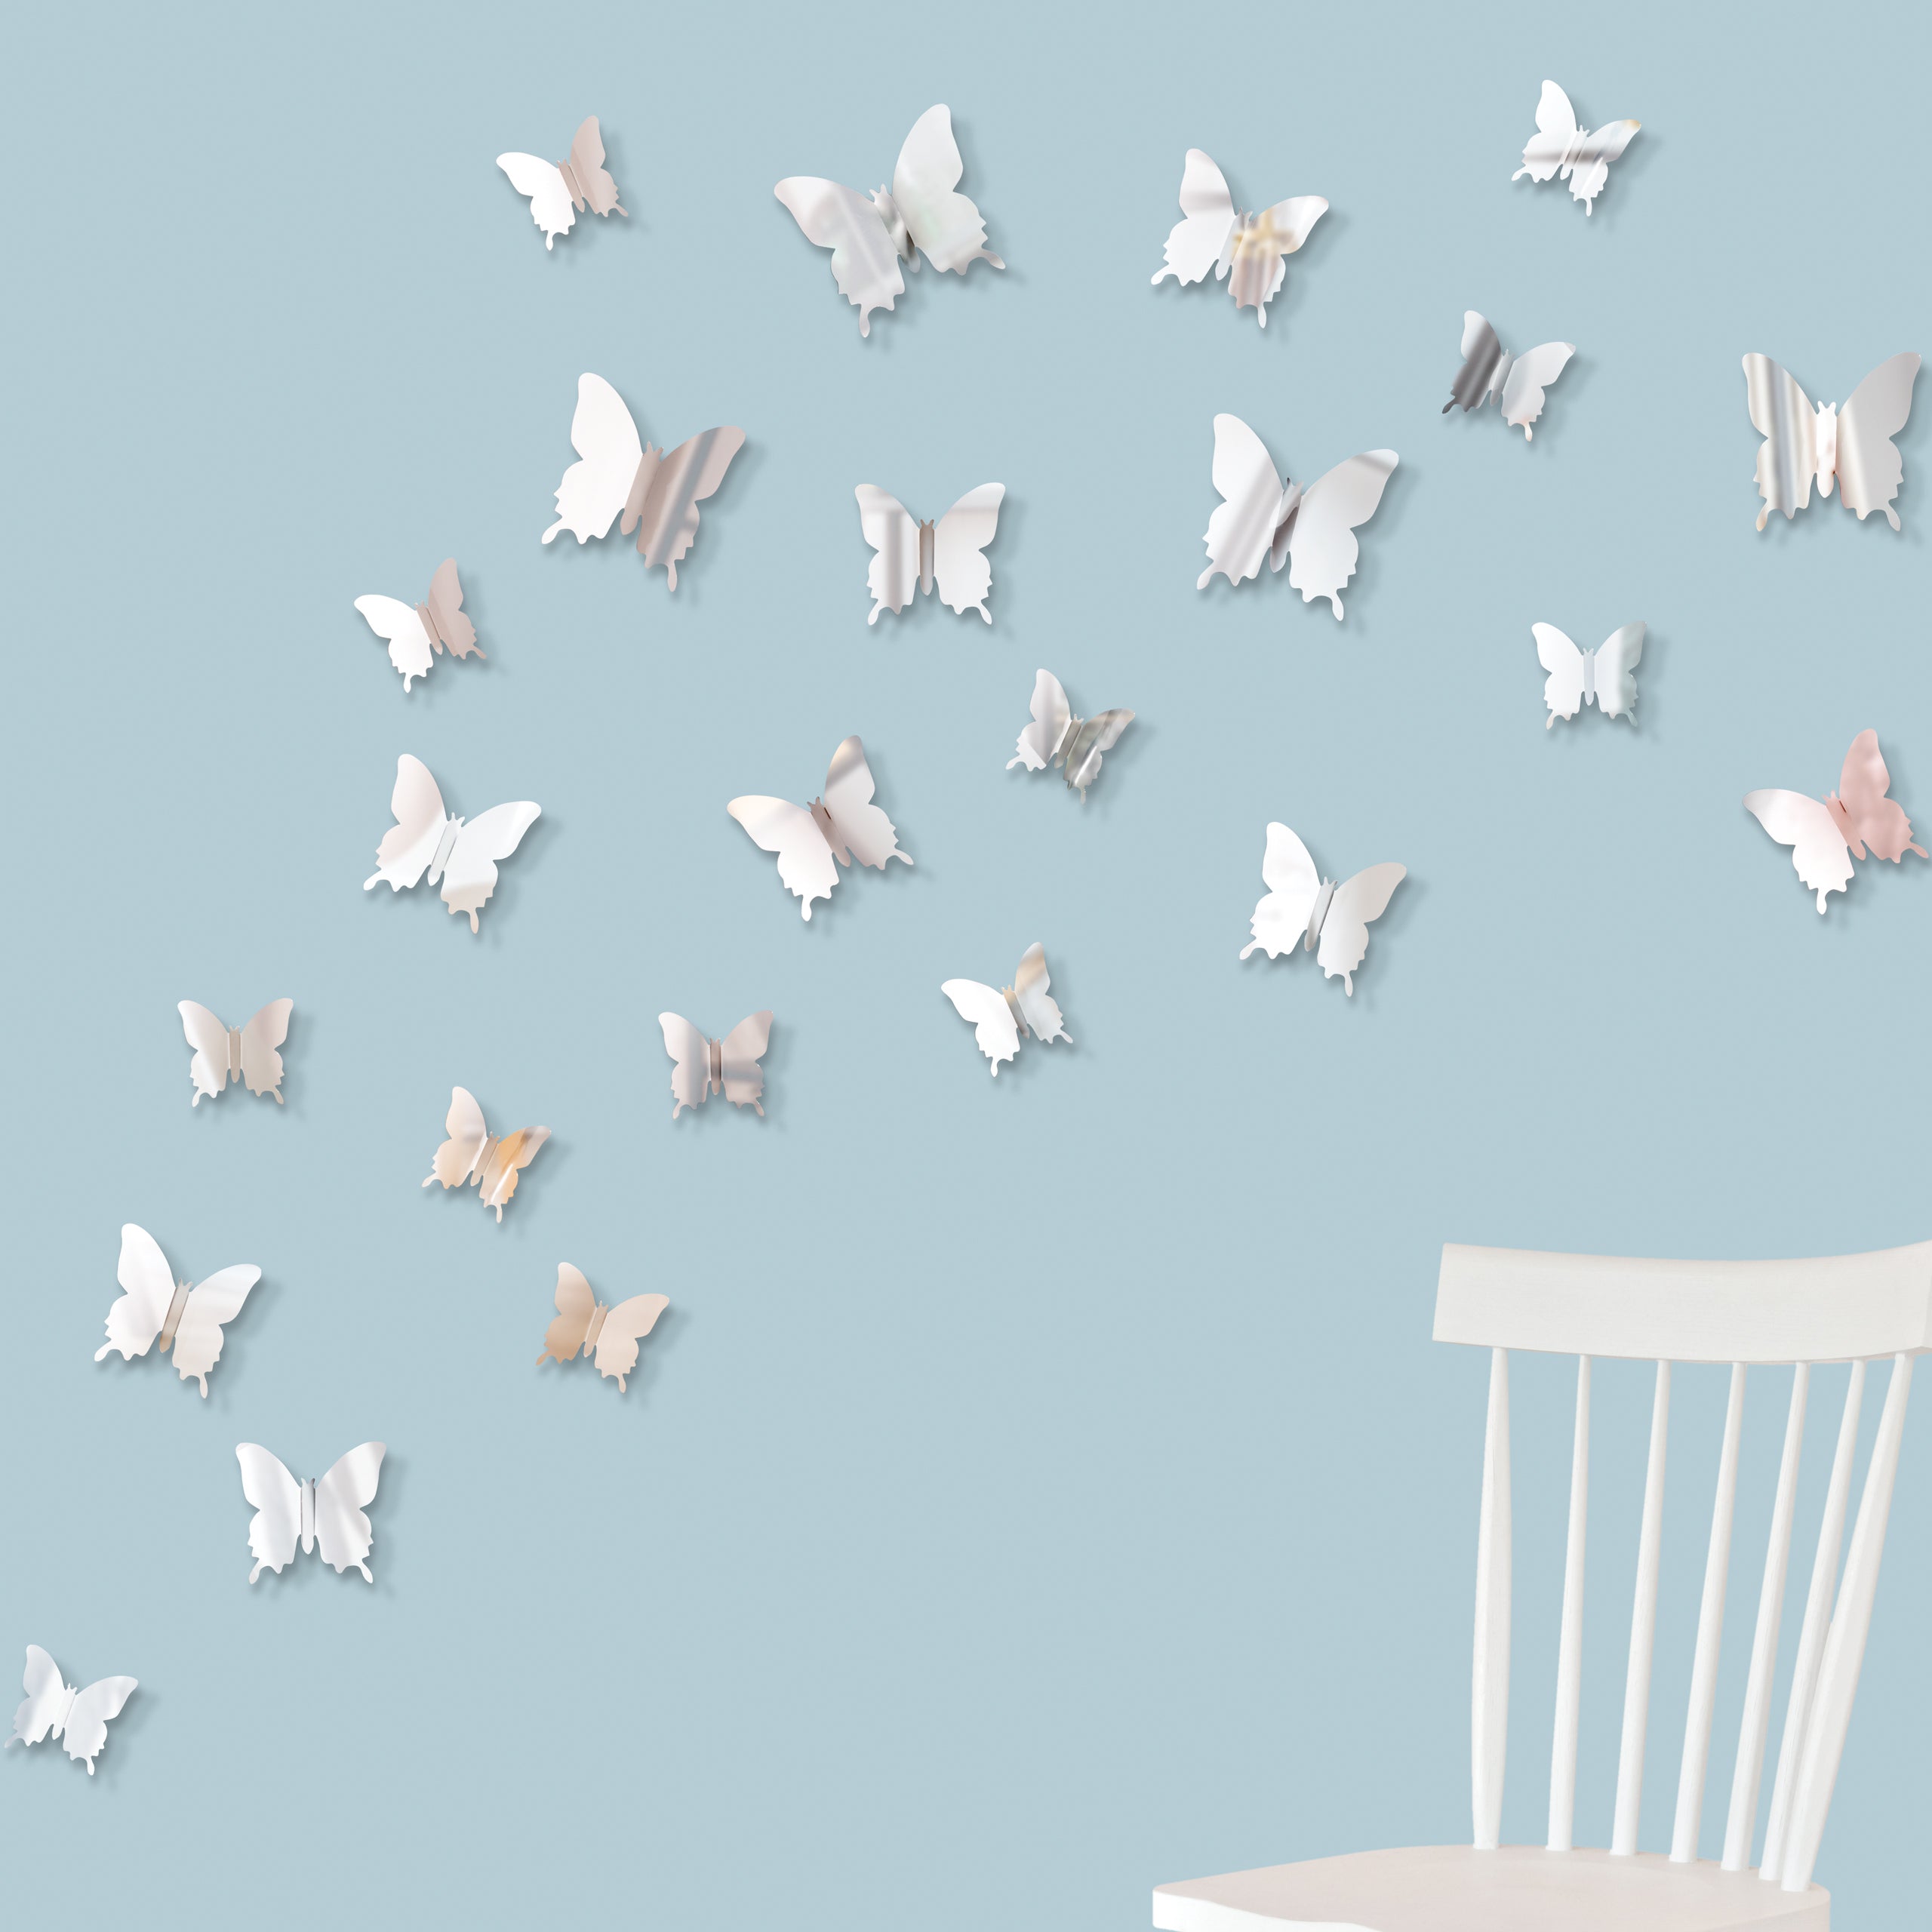 Set decorativo de 24 mariposas flexibles